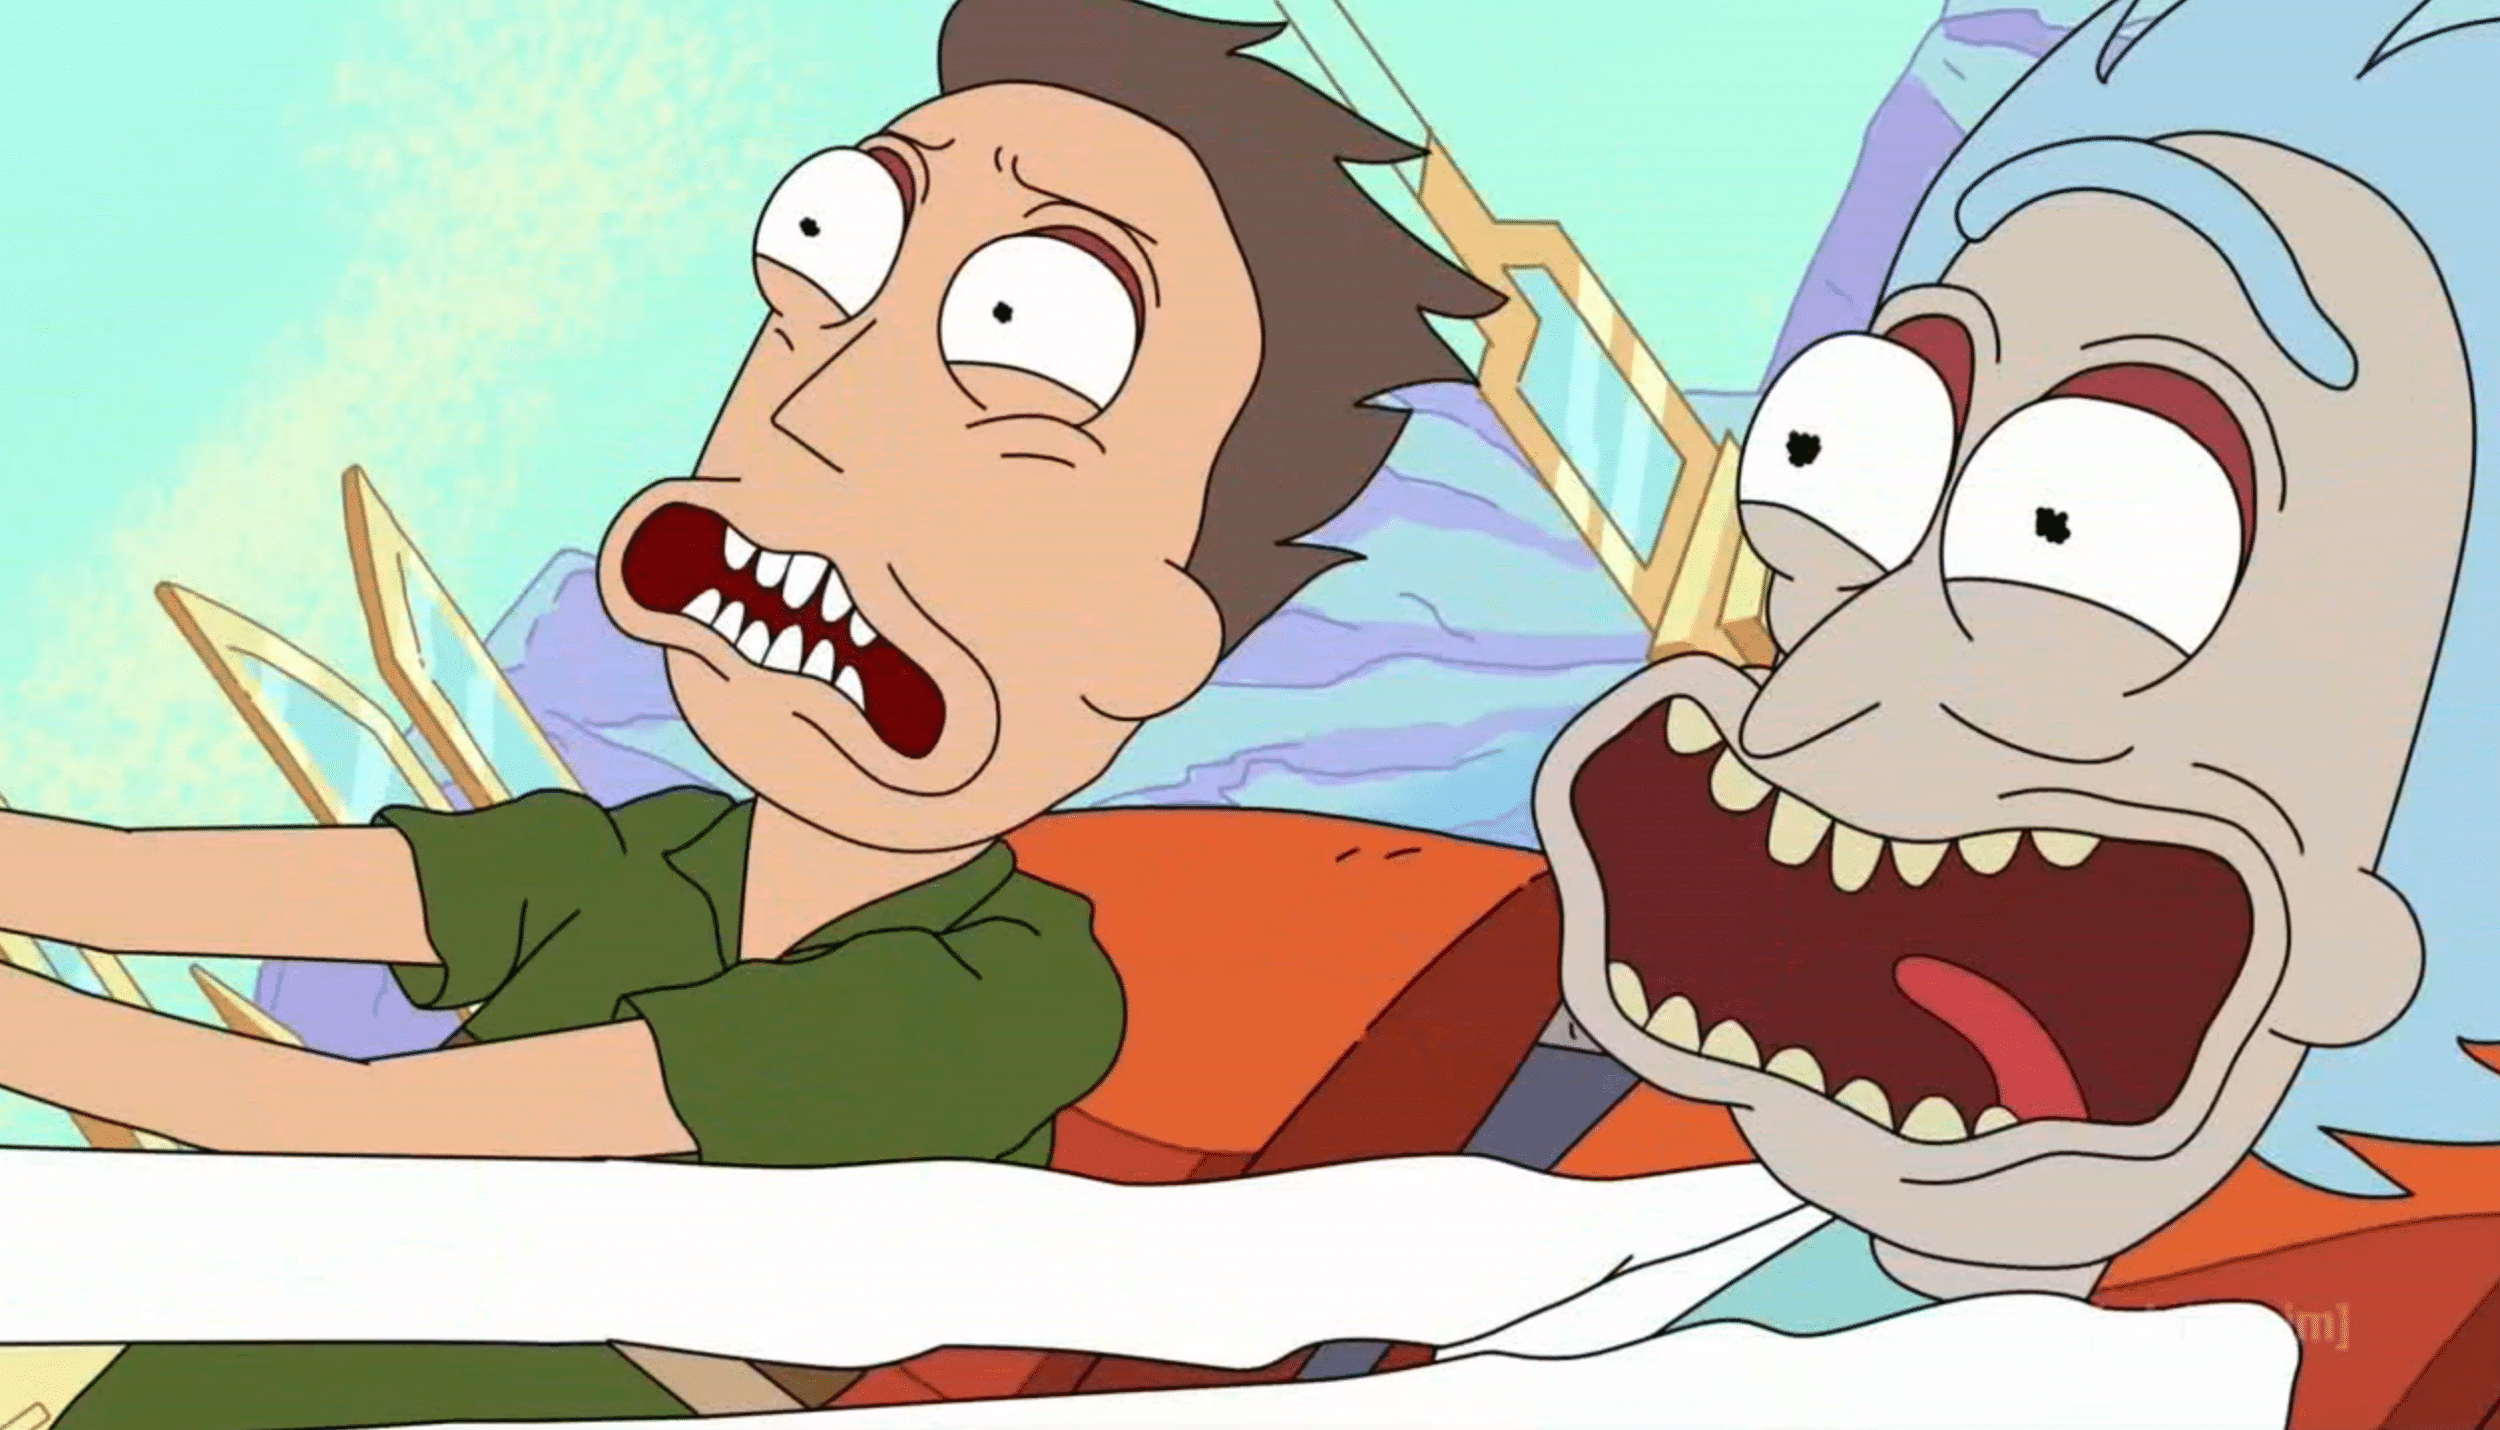 Tout ce qu'il faut savoir sur la saison 4 de Rick et Morty